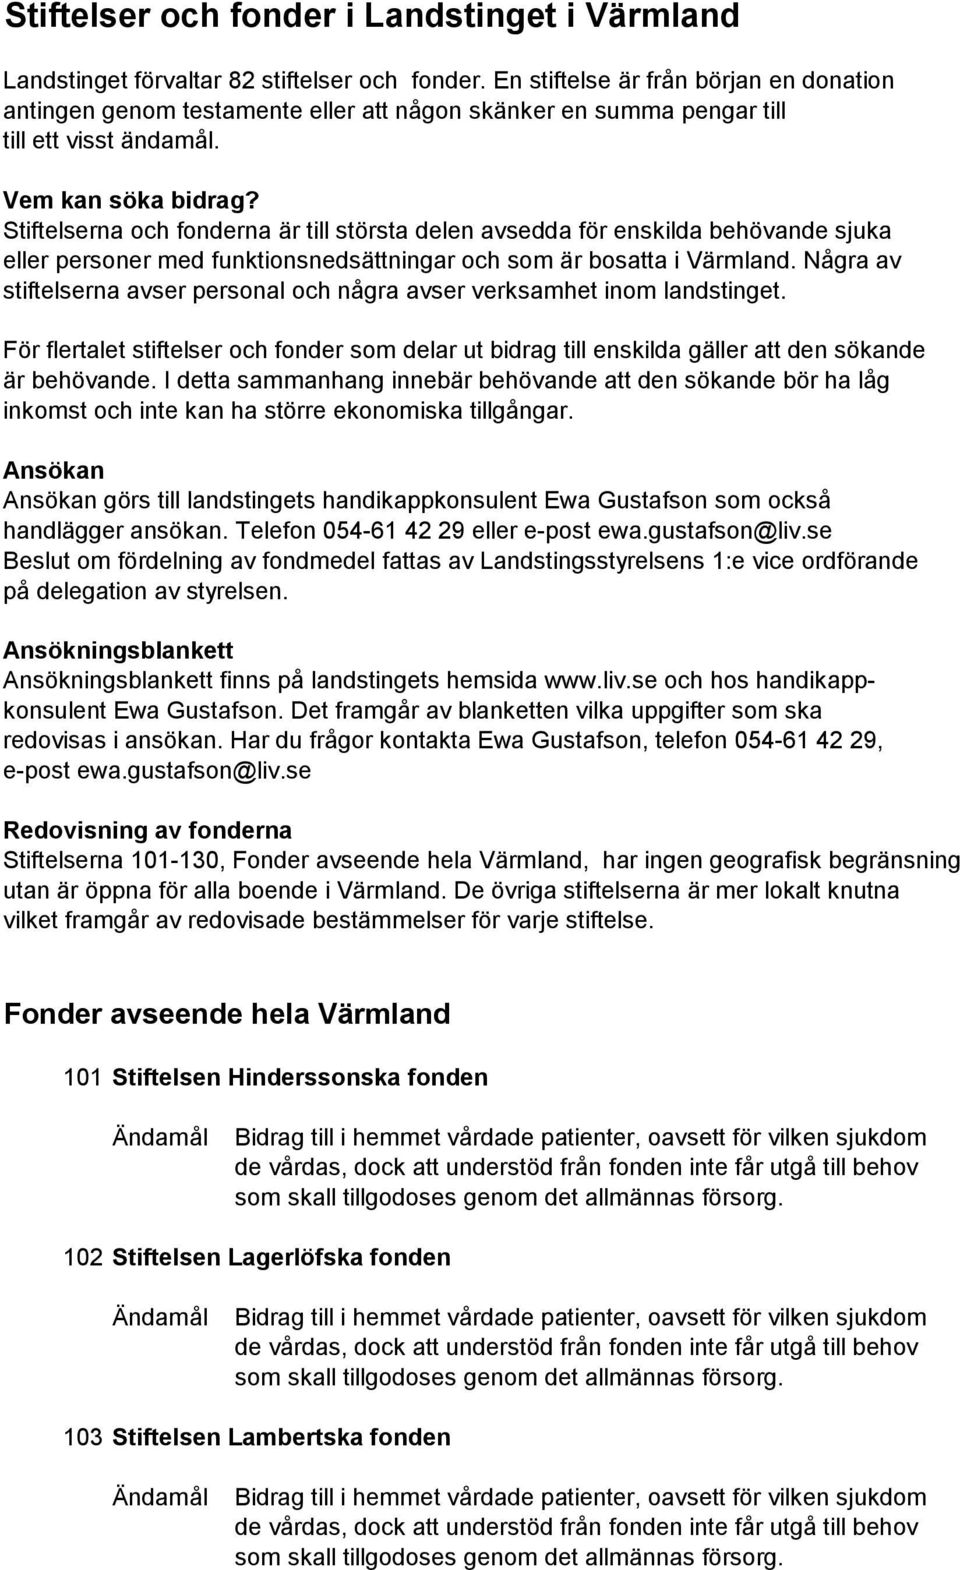 Stiftelser och fonder i Landstinget i Värmland - PDF Gratis ...